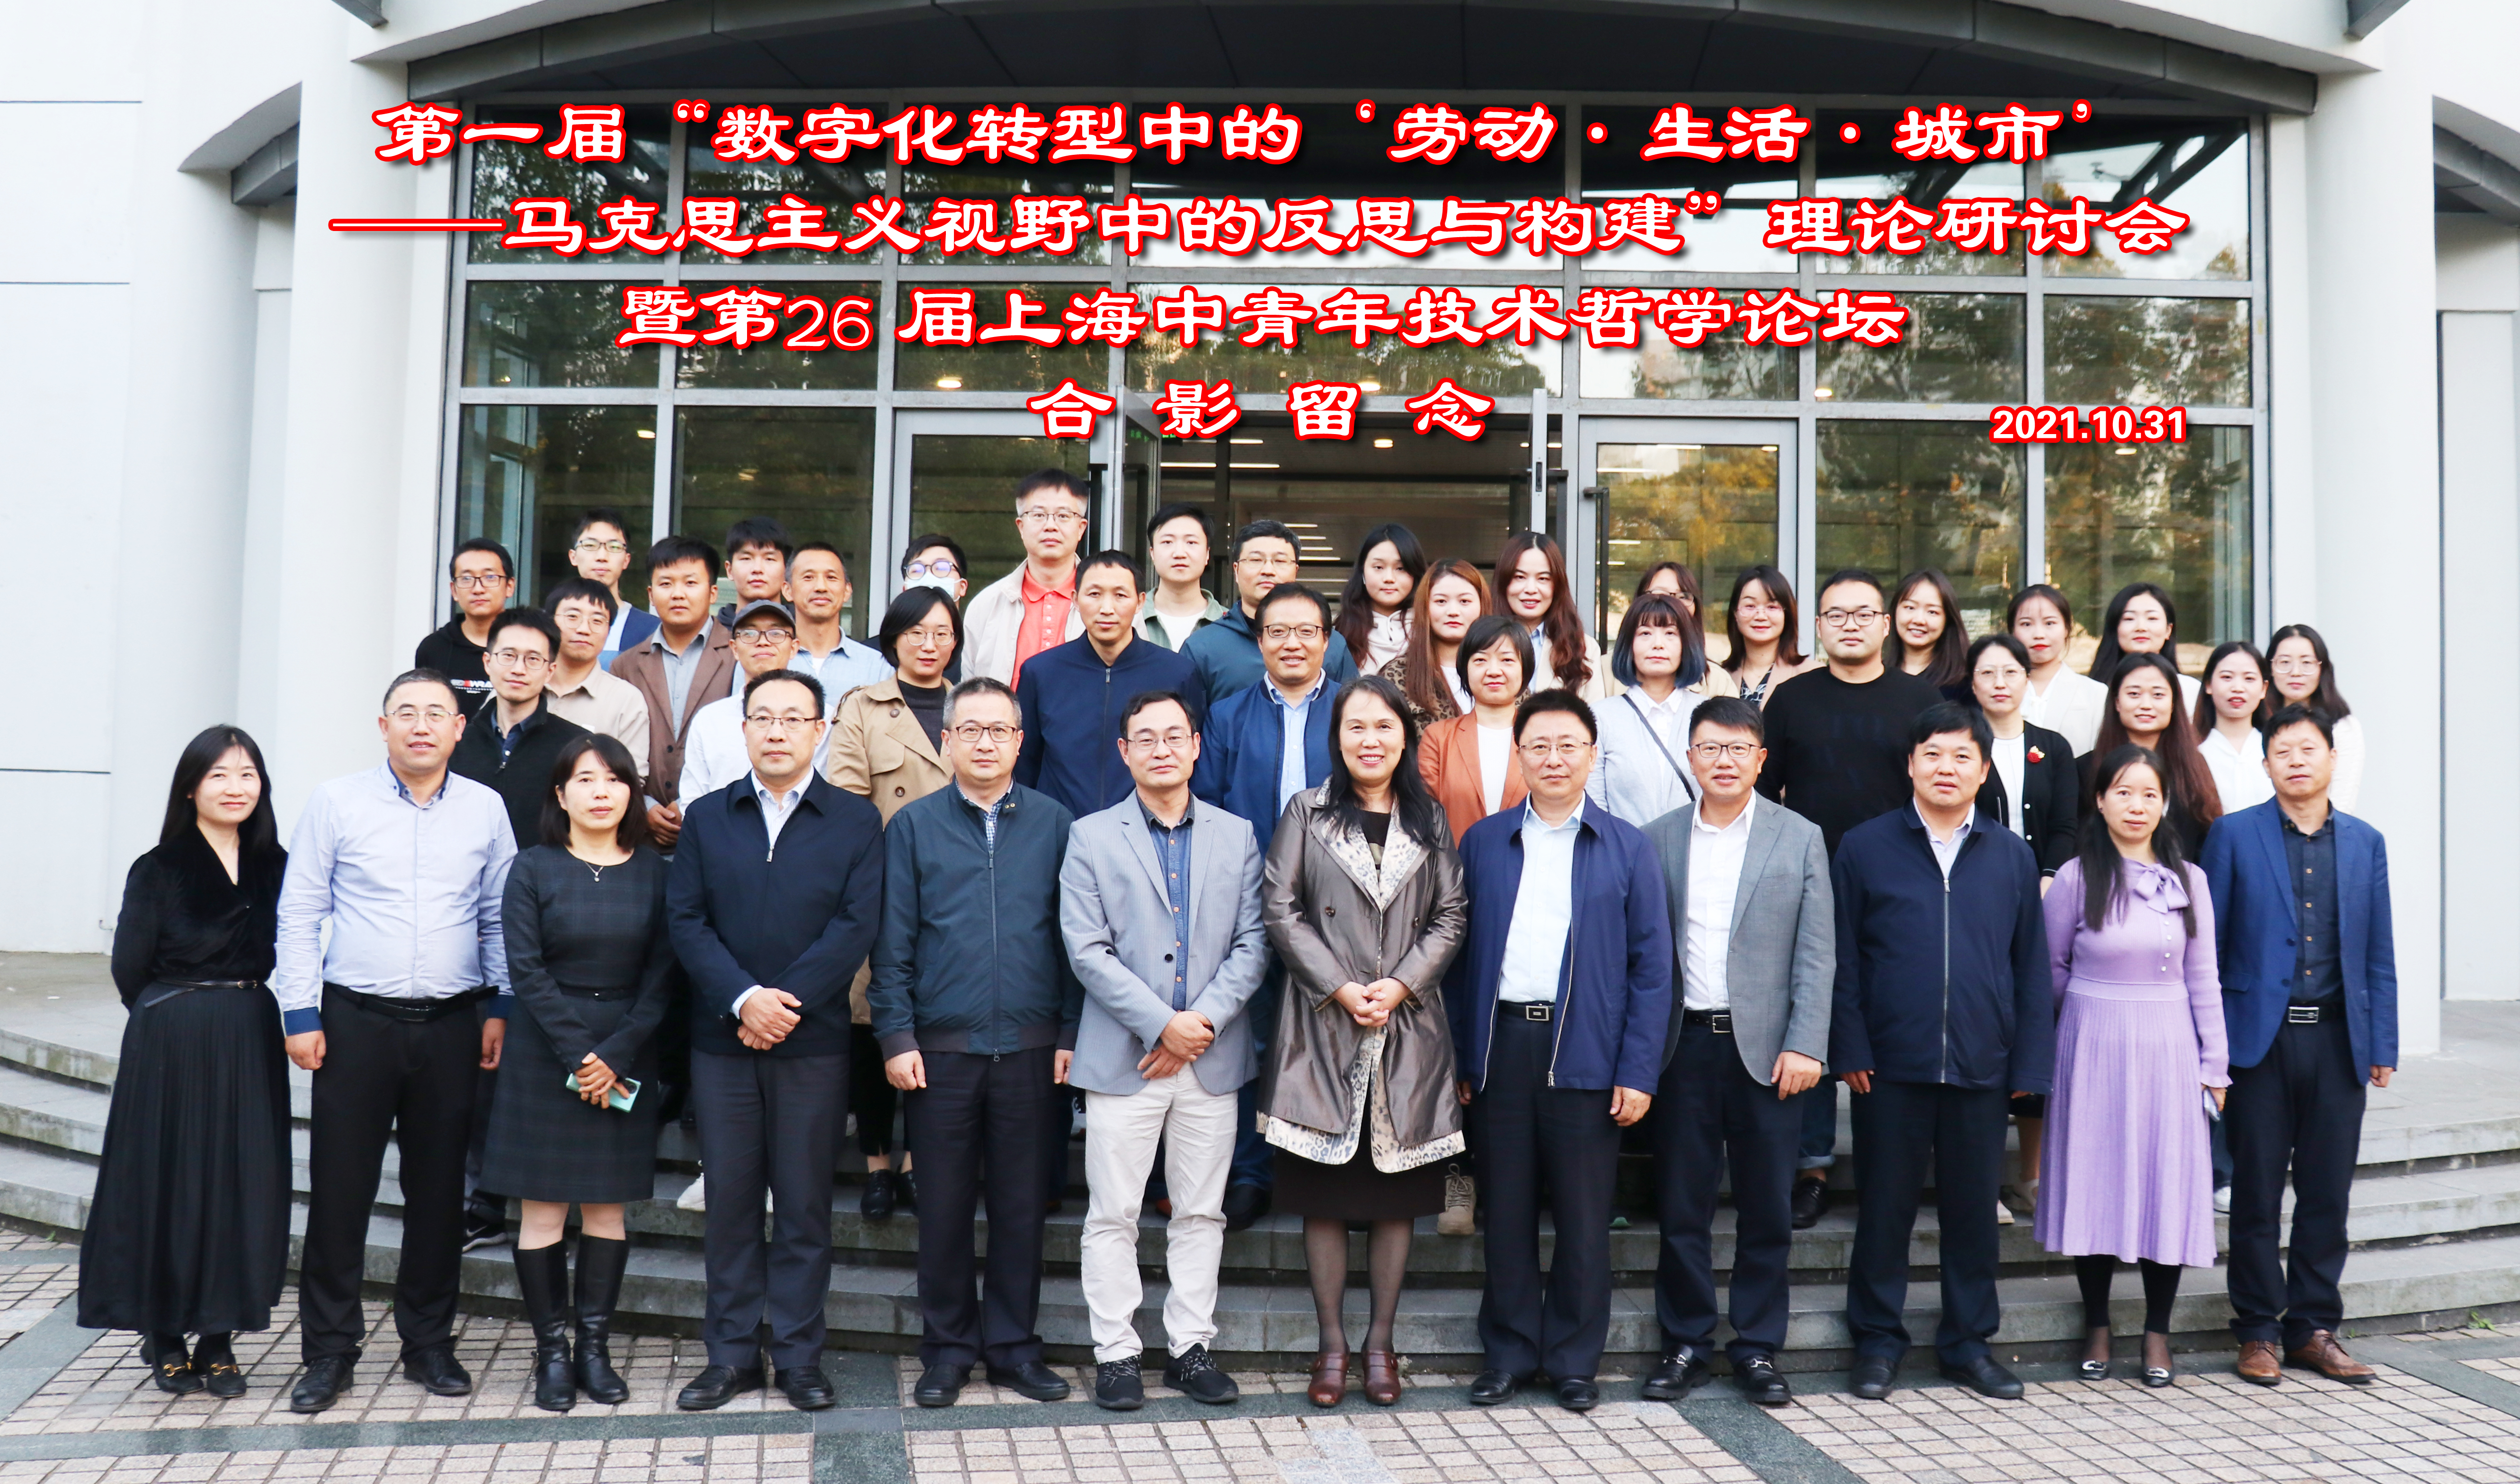 第一屆“數字化轉型中的‘勞動·生活·城市’——馬克思主義視野中的反思與構建”理論研討會暨第26屆上海中青年技術哲學論壇。